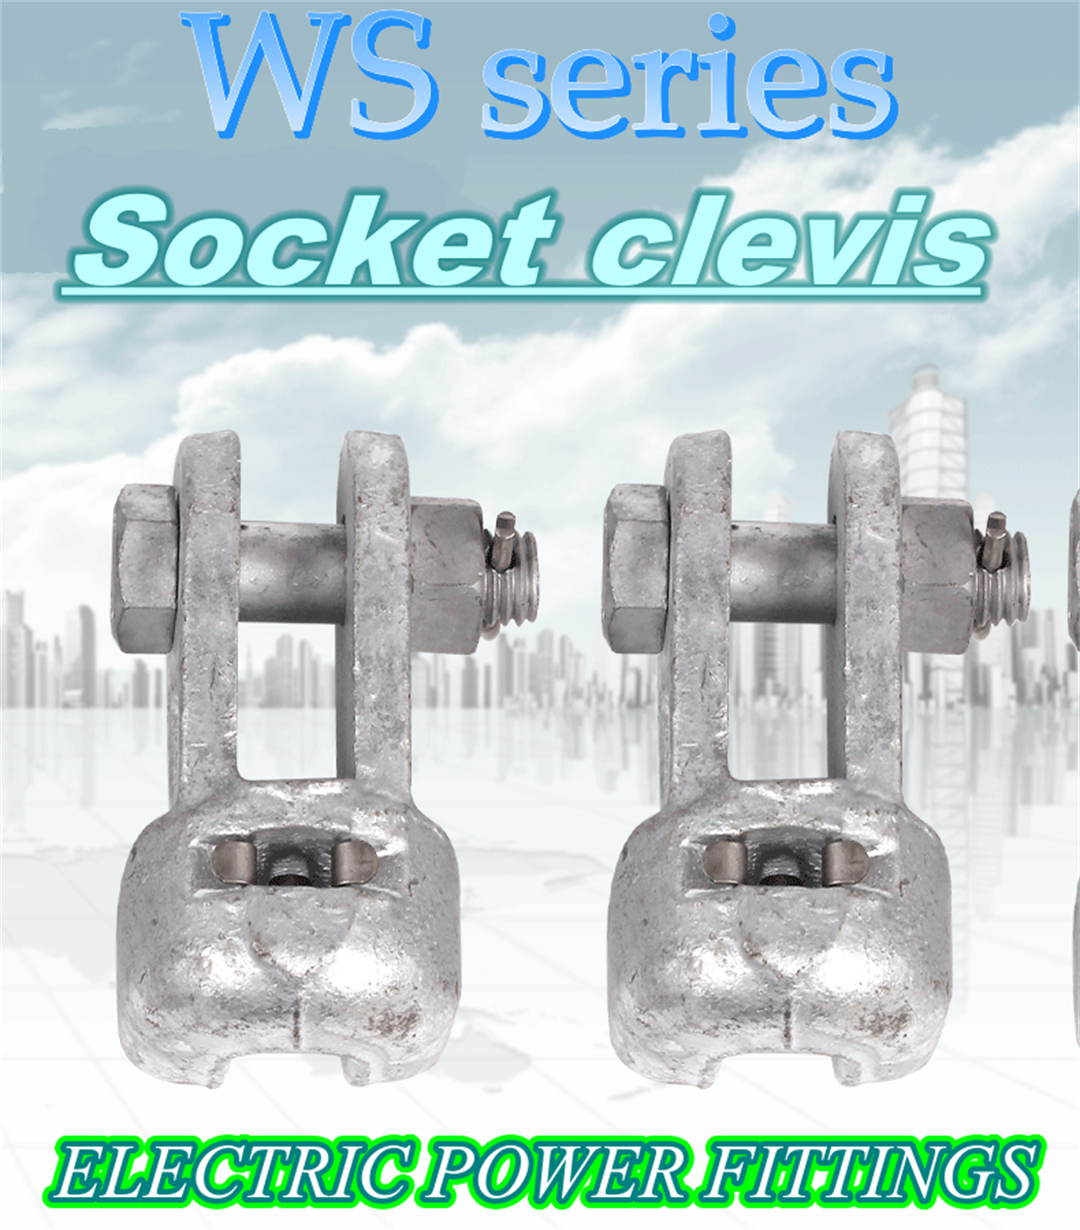 Socket clevis  link fitting